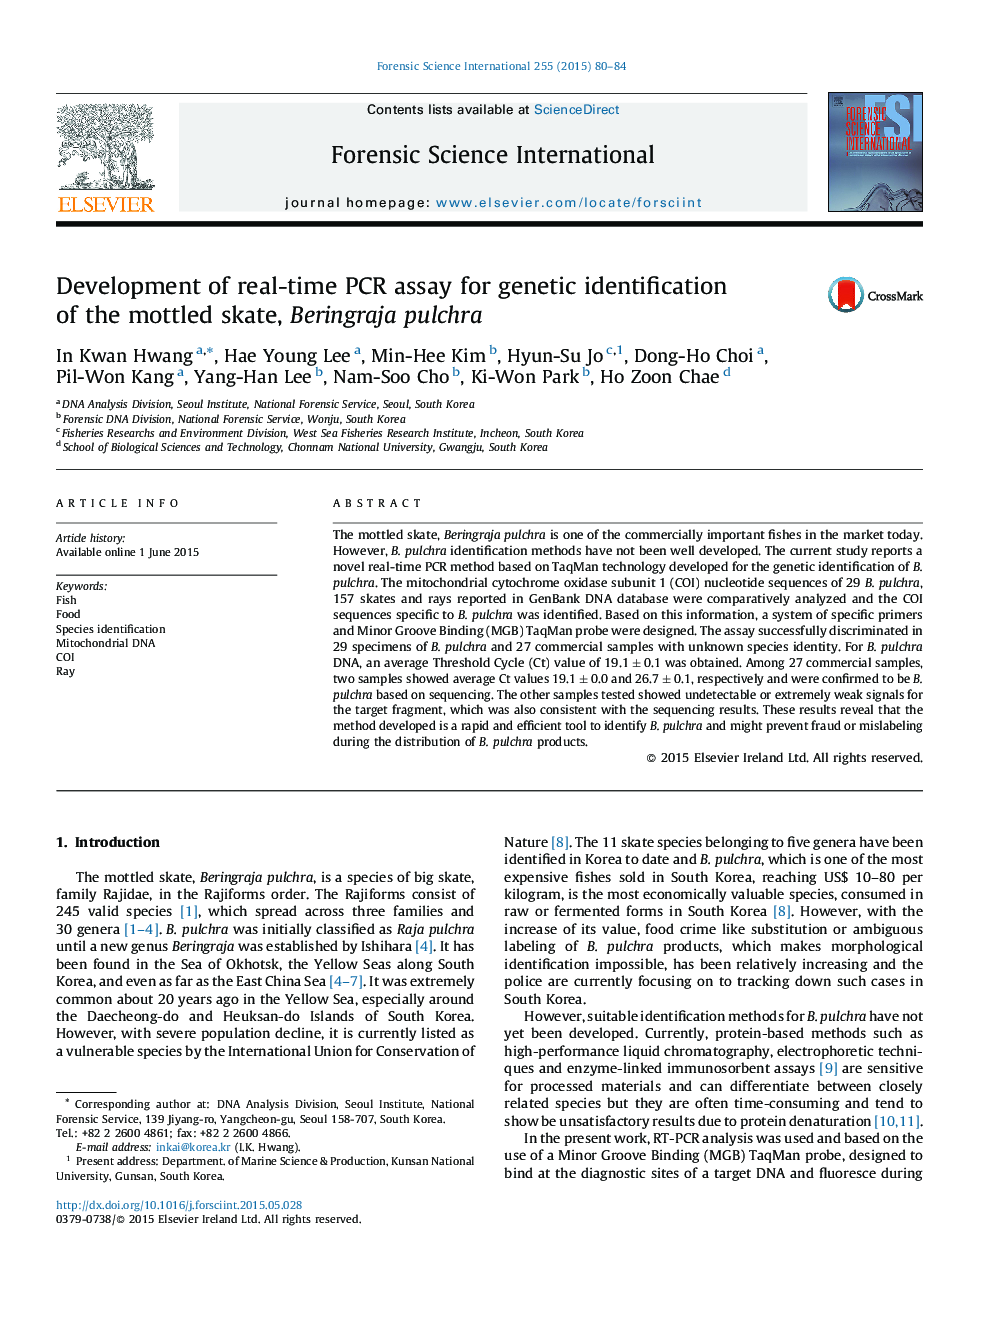 Development of real-time PCR assay for genetic identification of the mottled skate, Beringraja pulchra